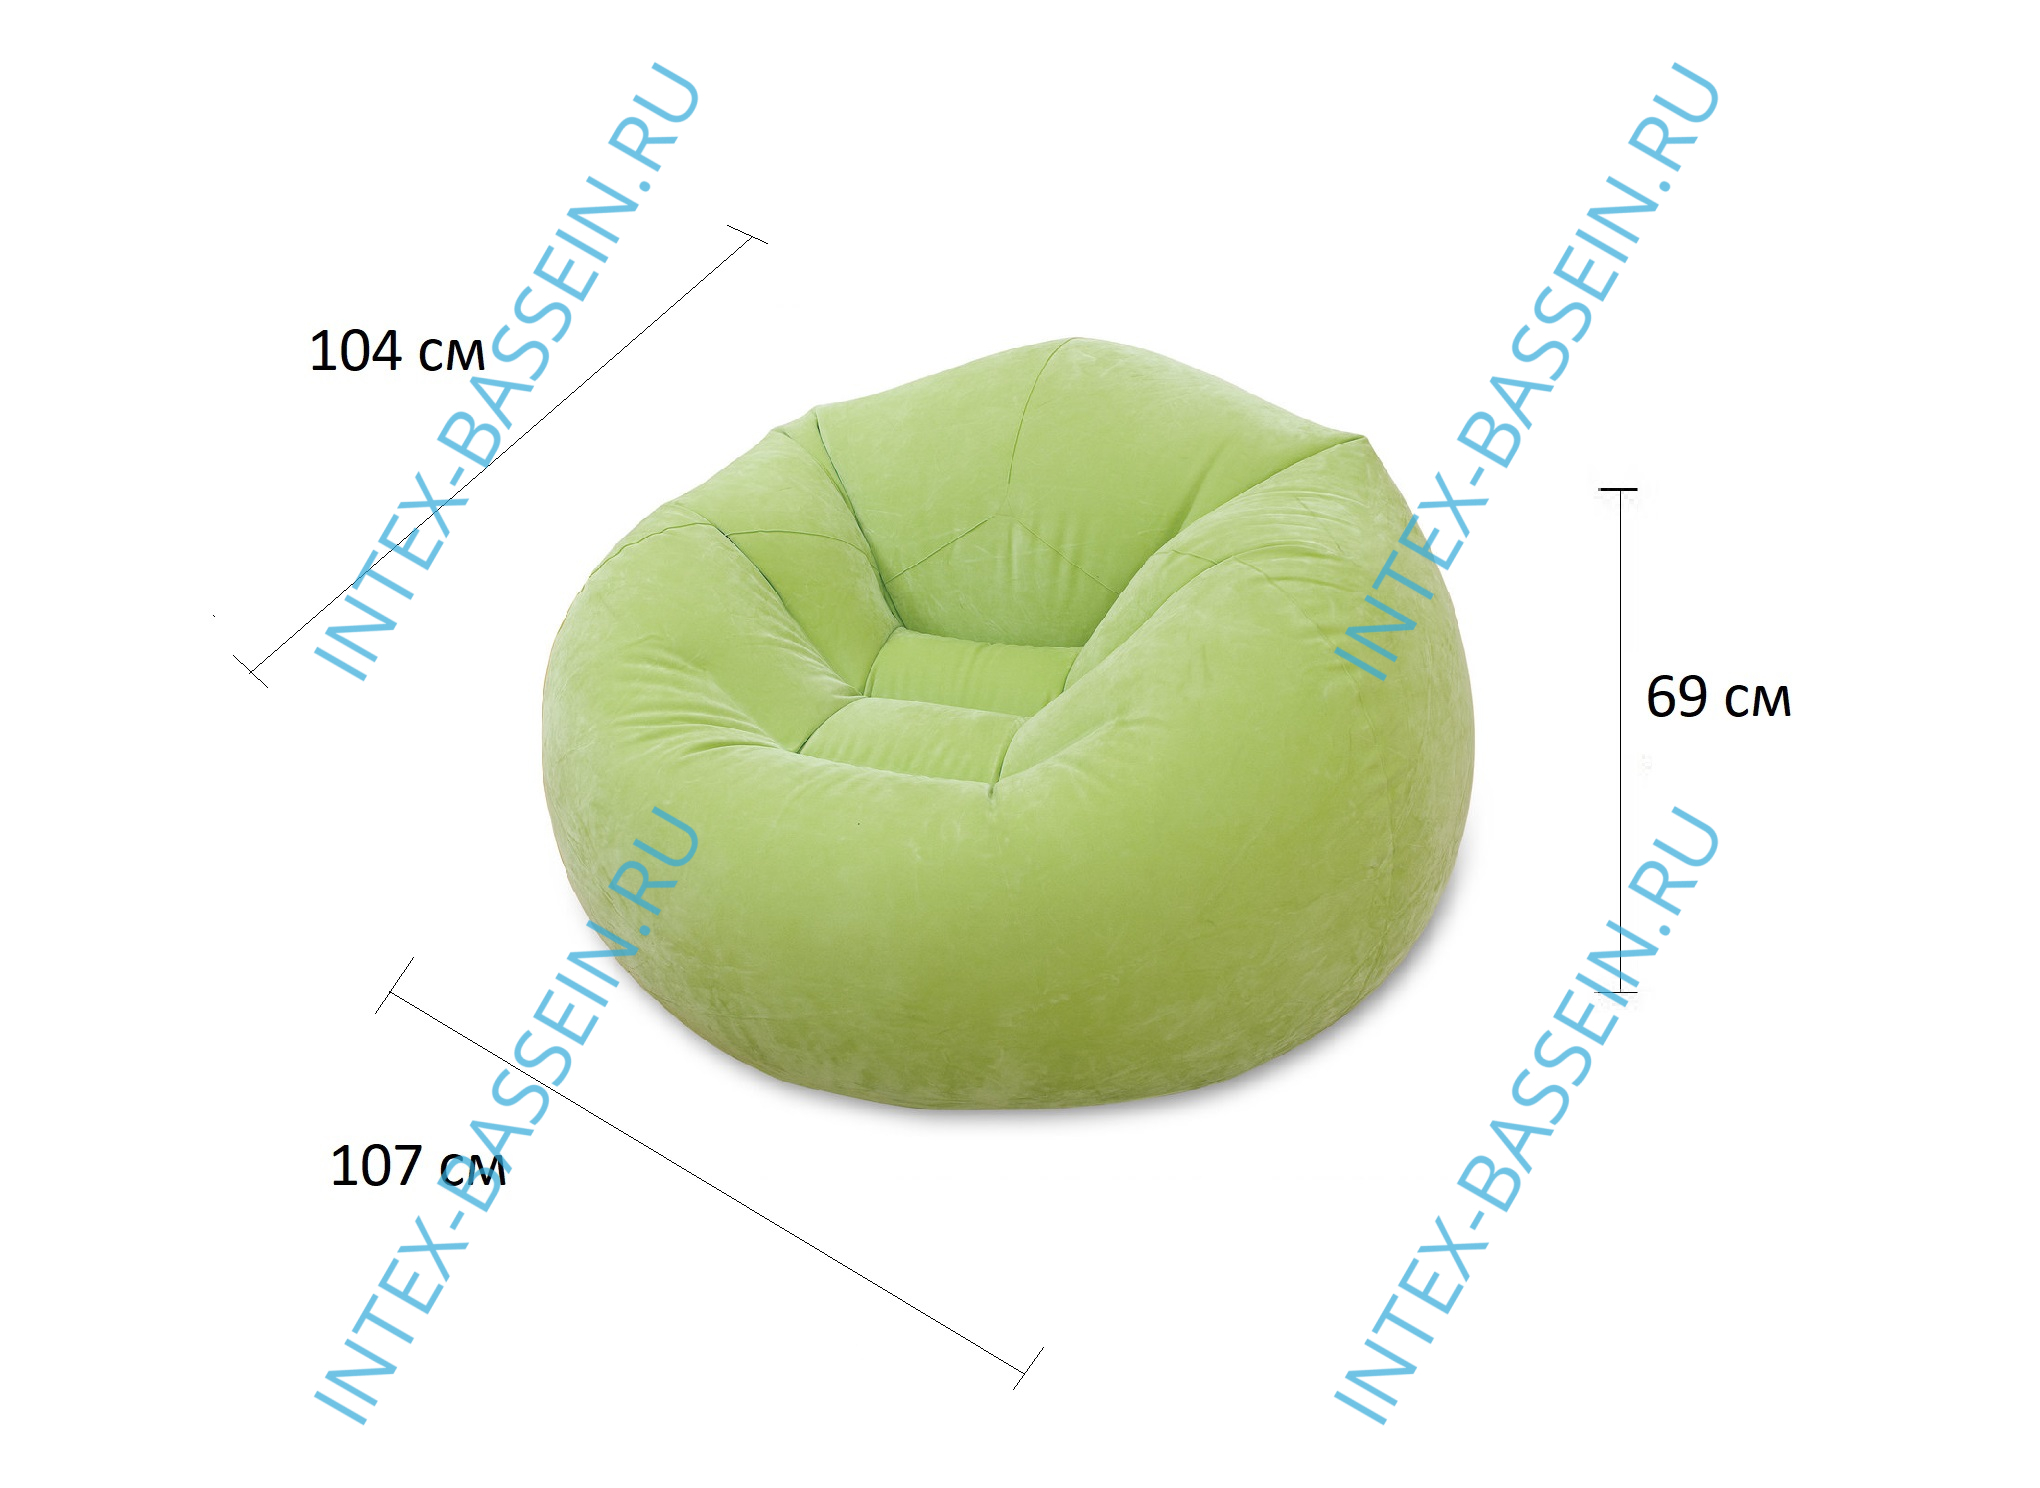 Надувное кресло INTEX 107 x 104 x 69 см, зелёный, артикул 68569-G